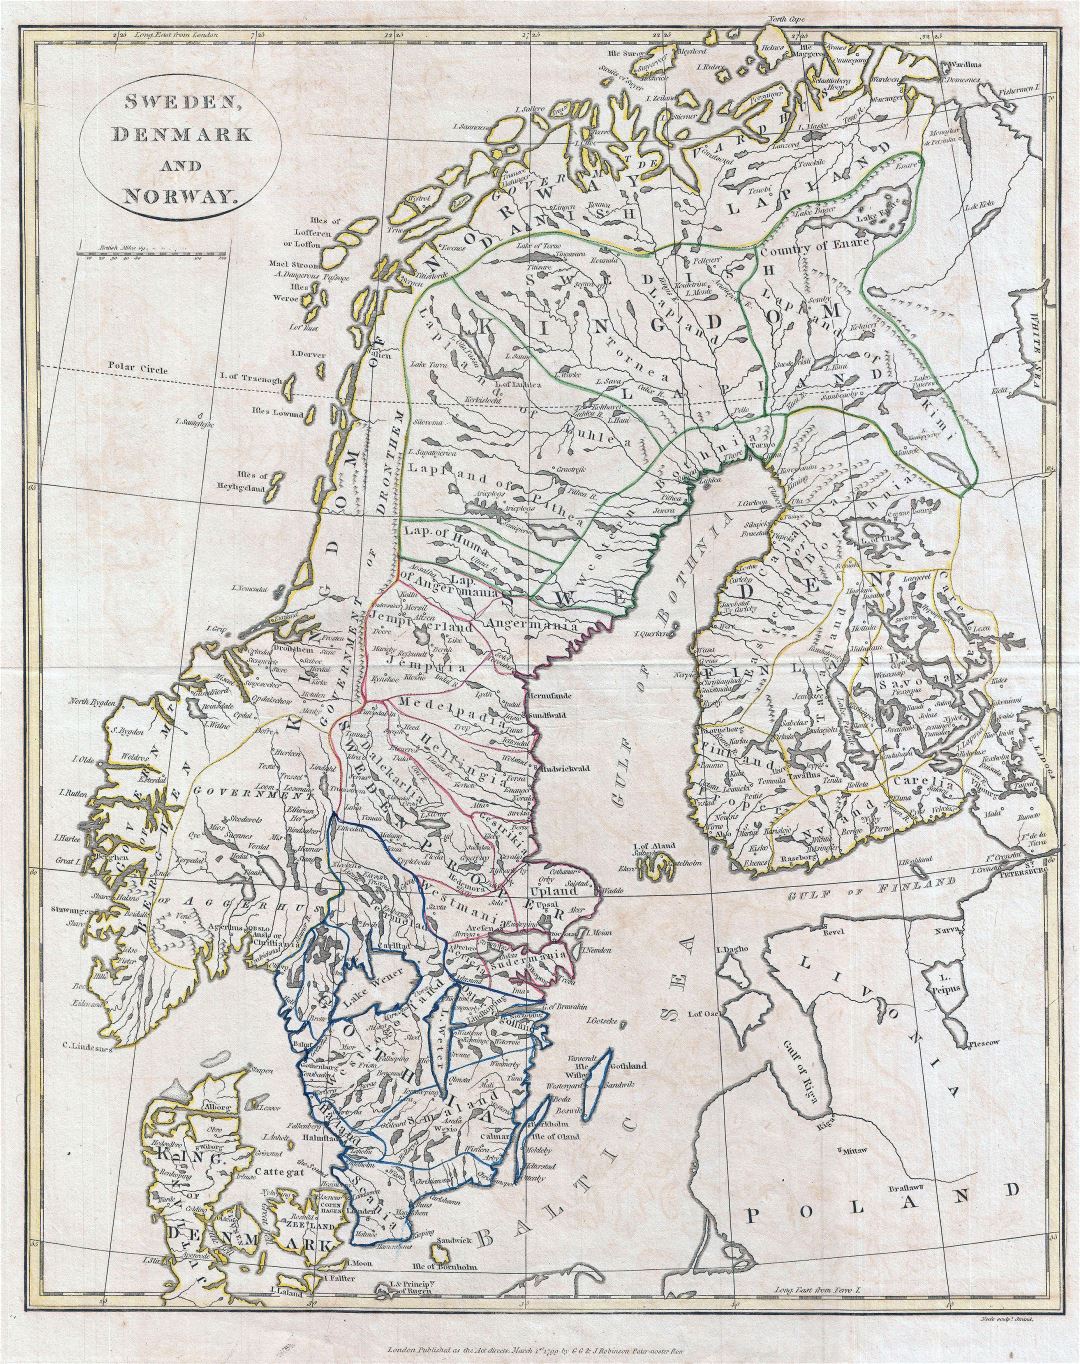 Grande detallado antiguo mapa político de Suecia, Dinamarca y Noruega con ciudades - 1799